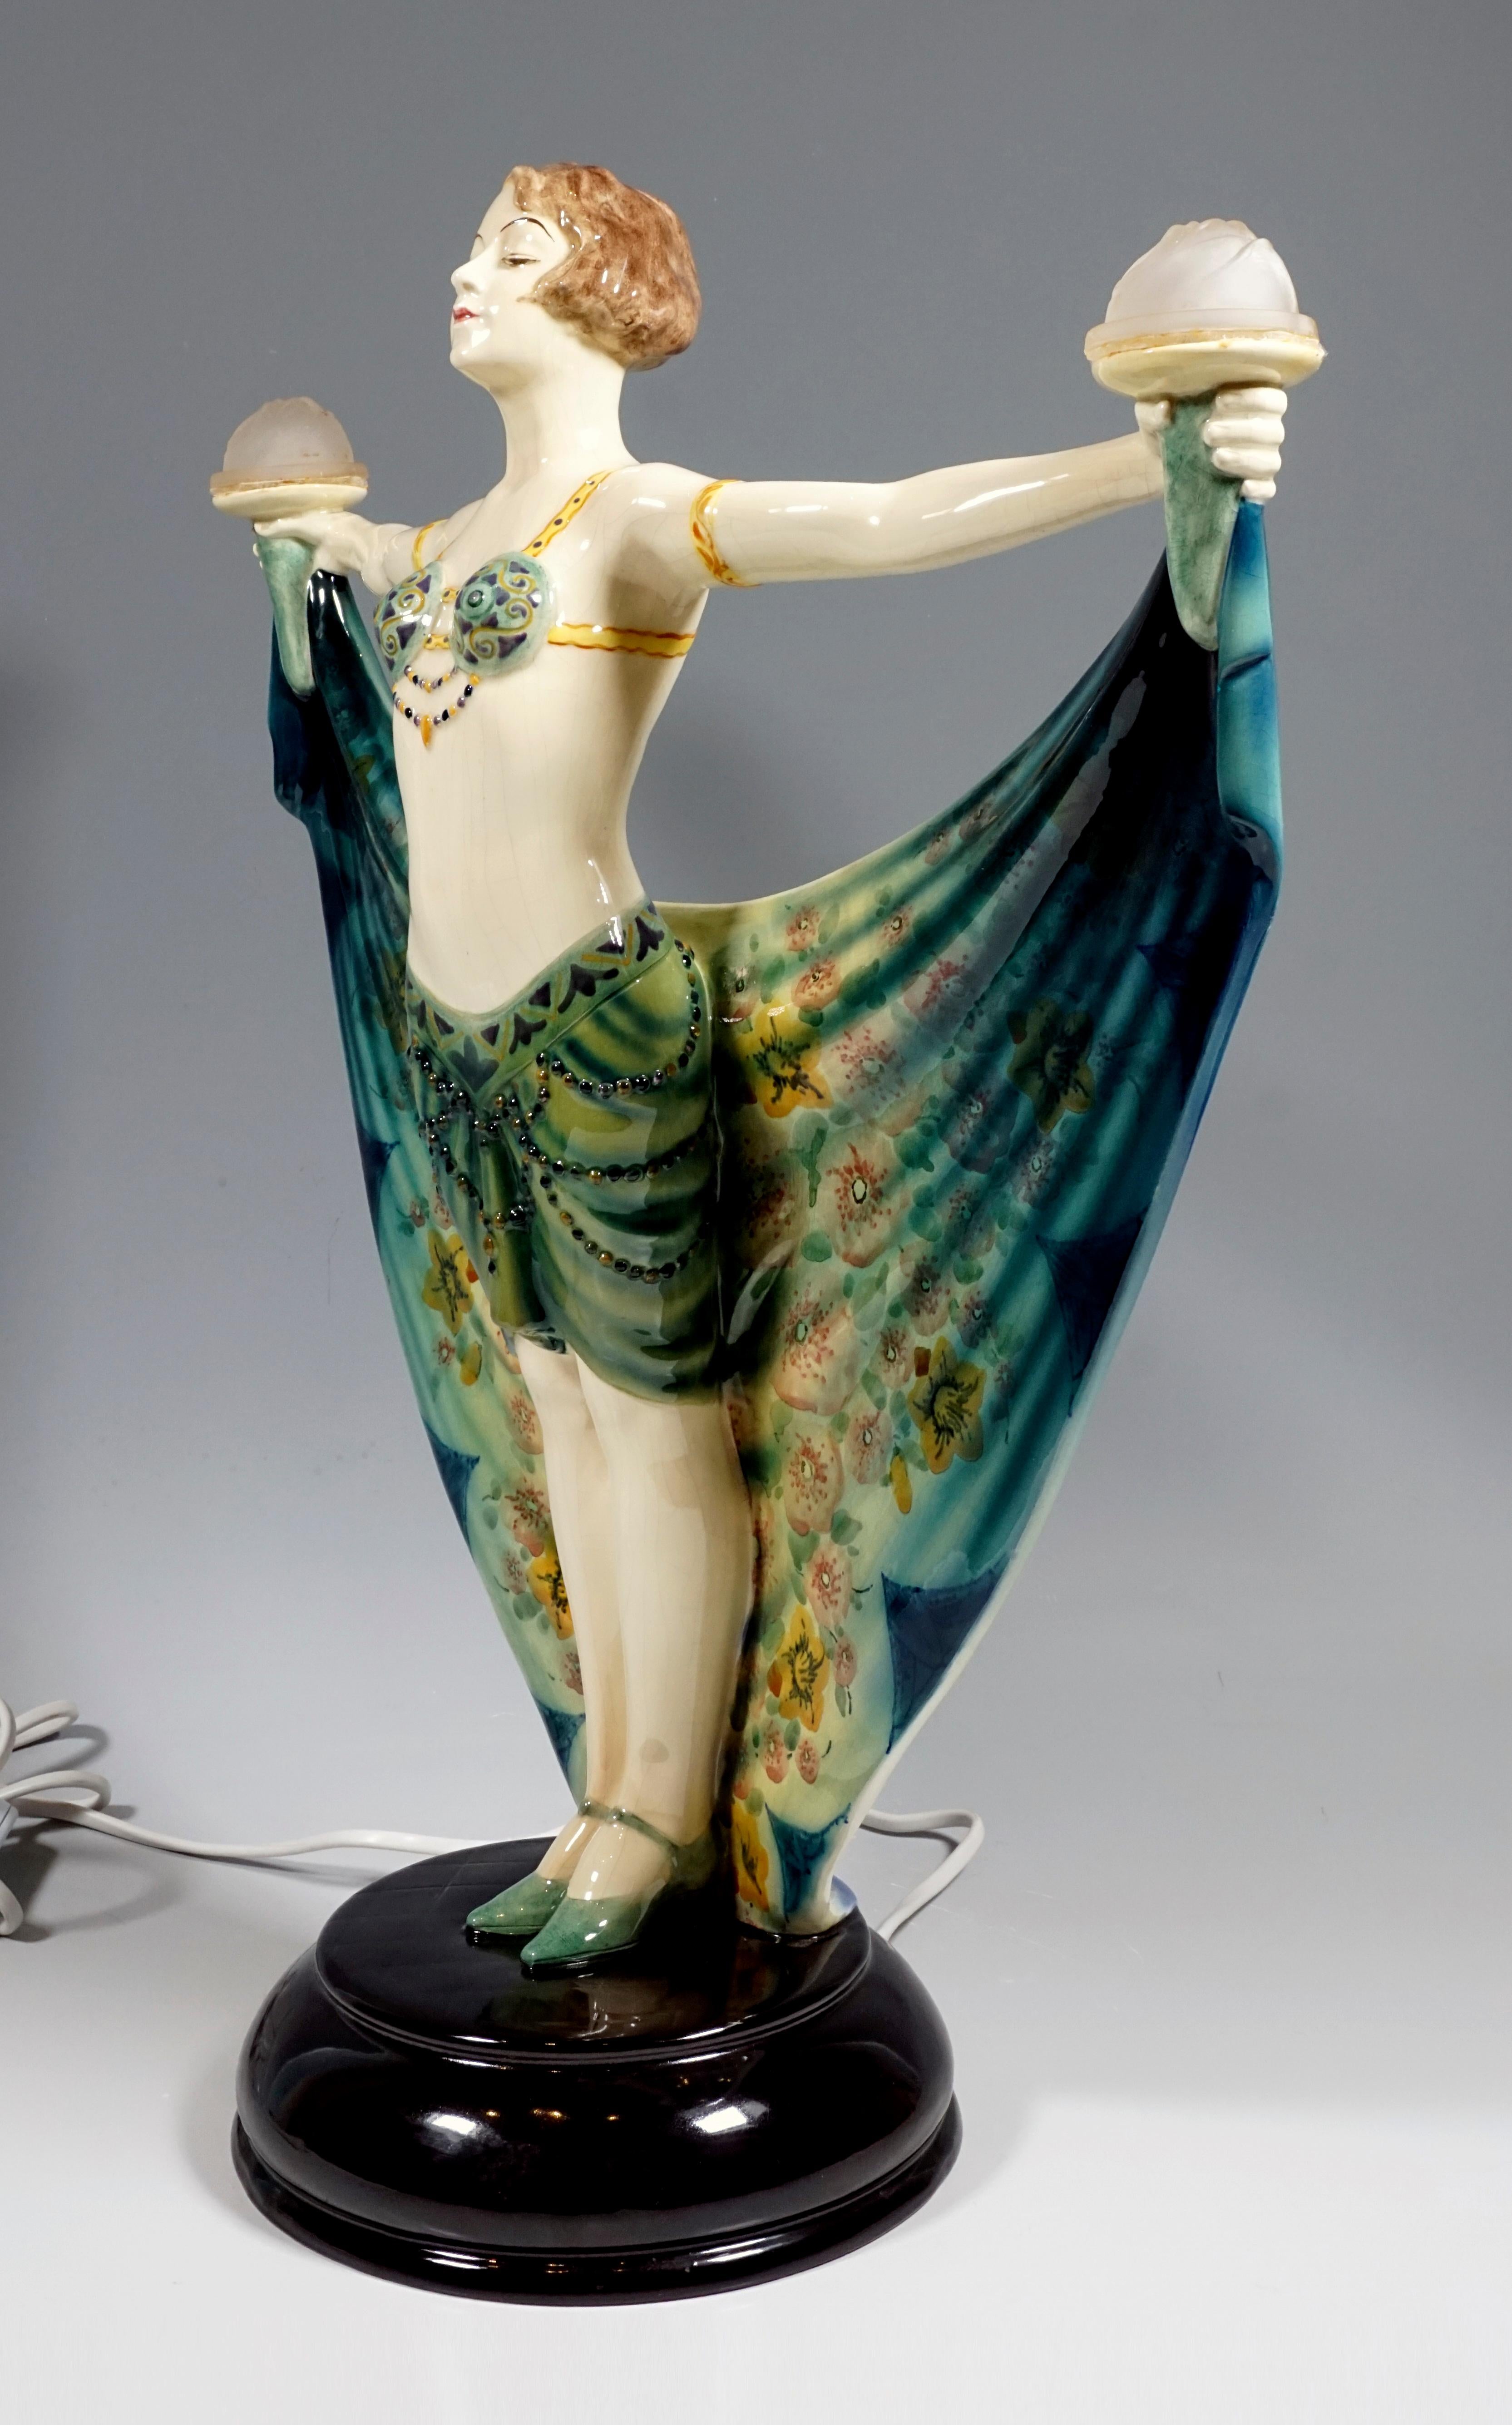 Hand-Crafted Goldscheider Vienna Art Deco Figure with Lighting 'Harem Dance' by Lorenzl, 1925